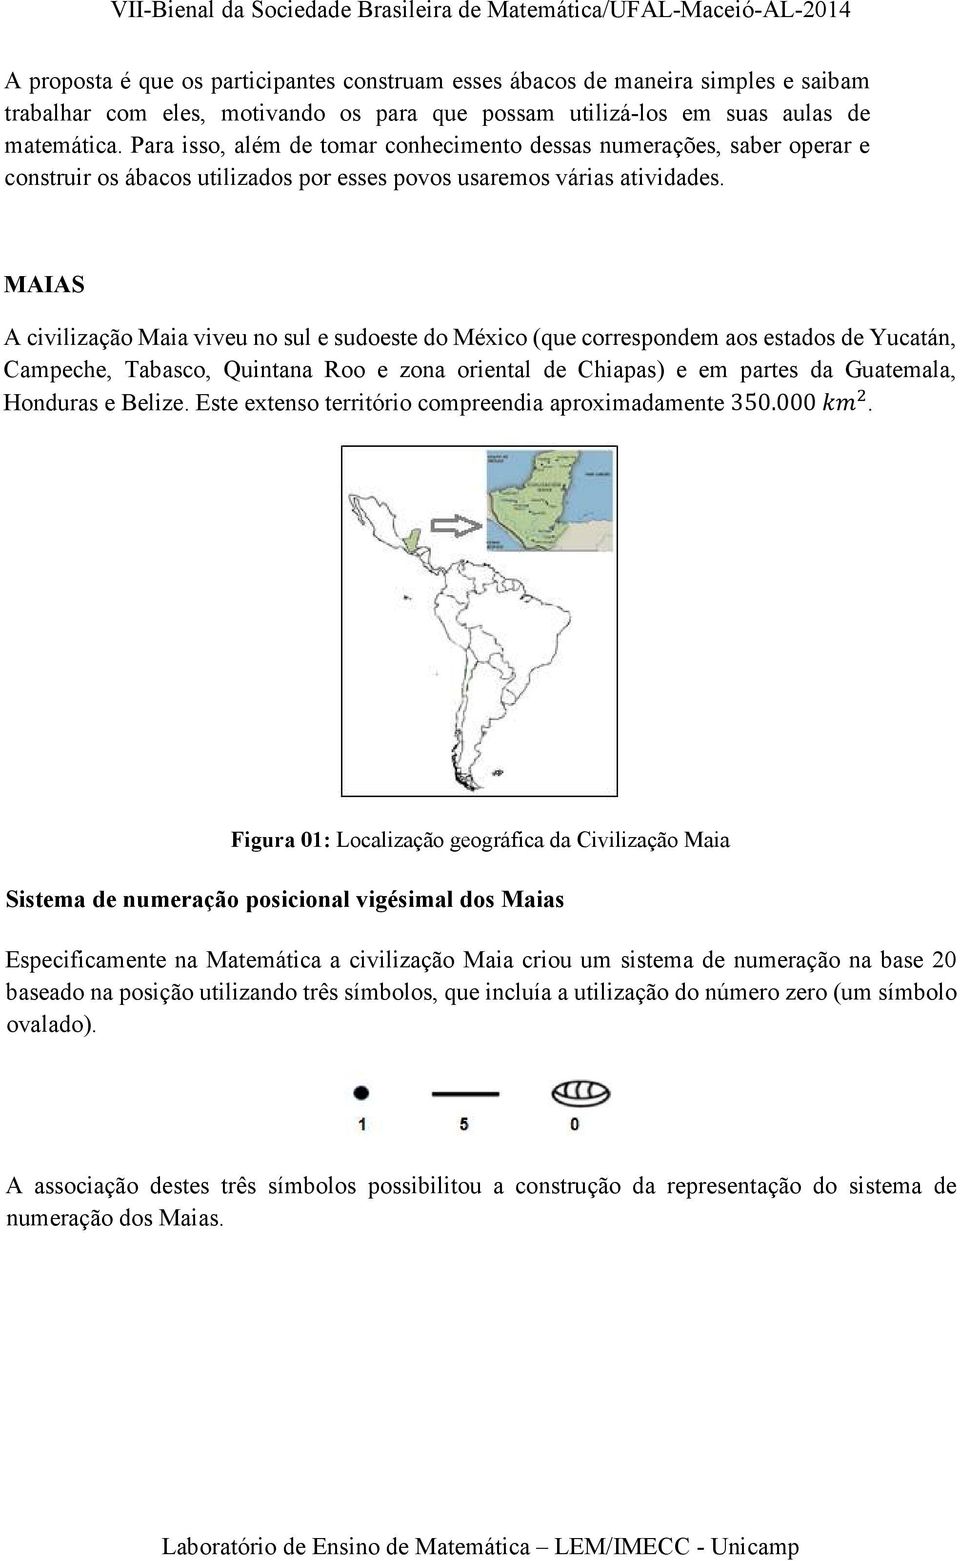 MAIAS A civilização Maia viveu no sul e sudoeste do México (que correspondem aos estados de Yucatán, Campeche, Tabasco, Quintana Roo e zona oriental de Chiapas) e em partes da Guatemala, Honduras e